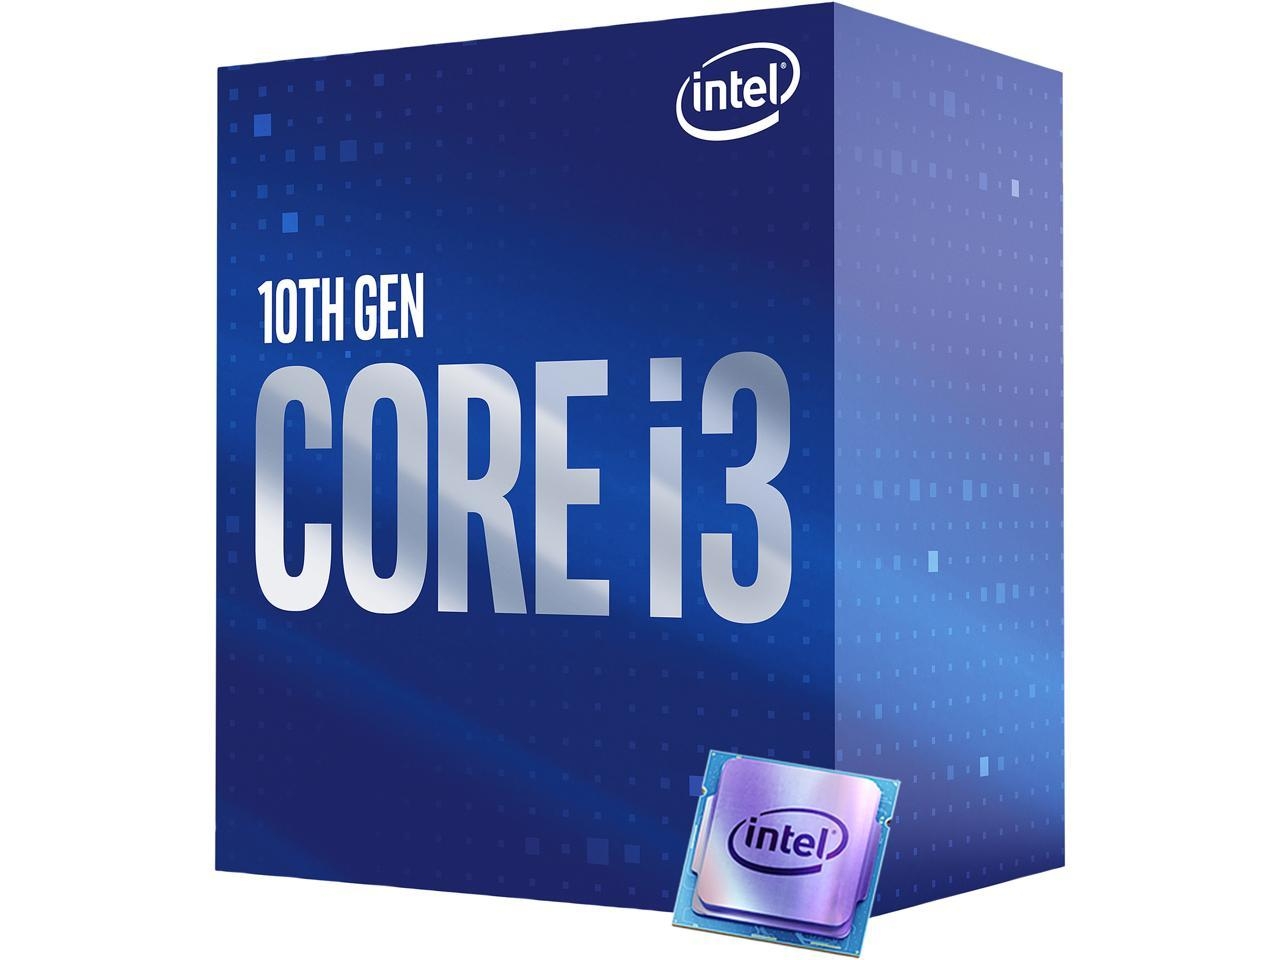 Should I buy an AMD Ryzen 5 1500X or Intel Core i3 10th Gen CPU?